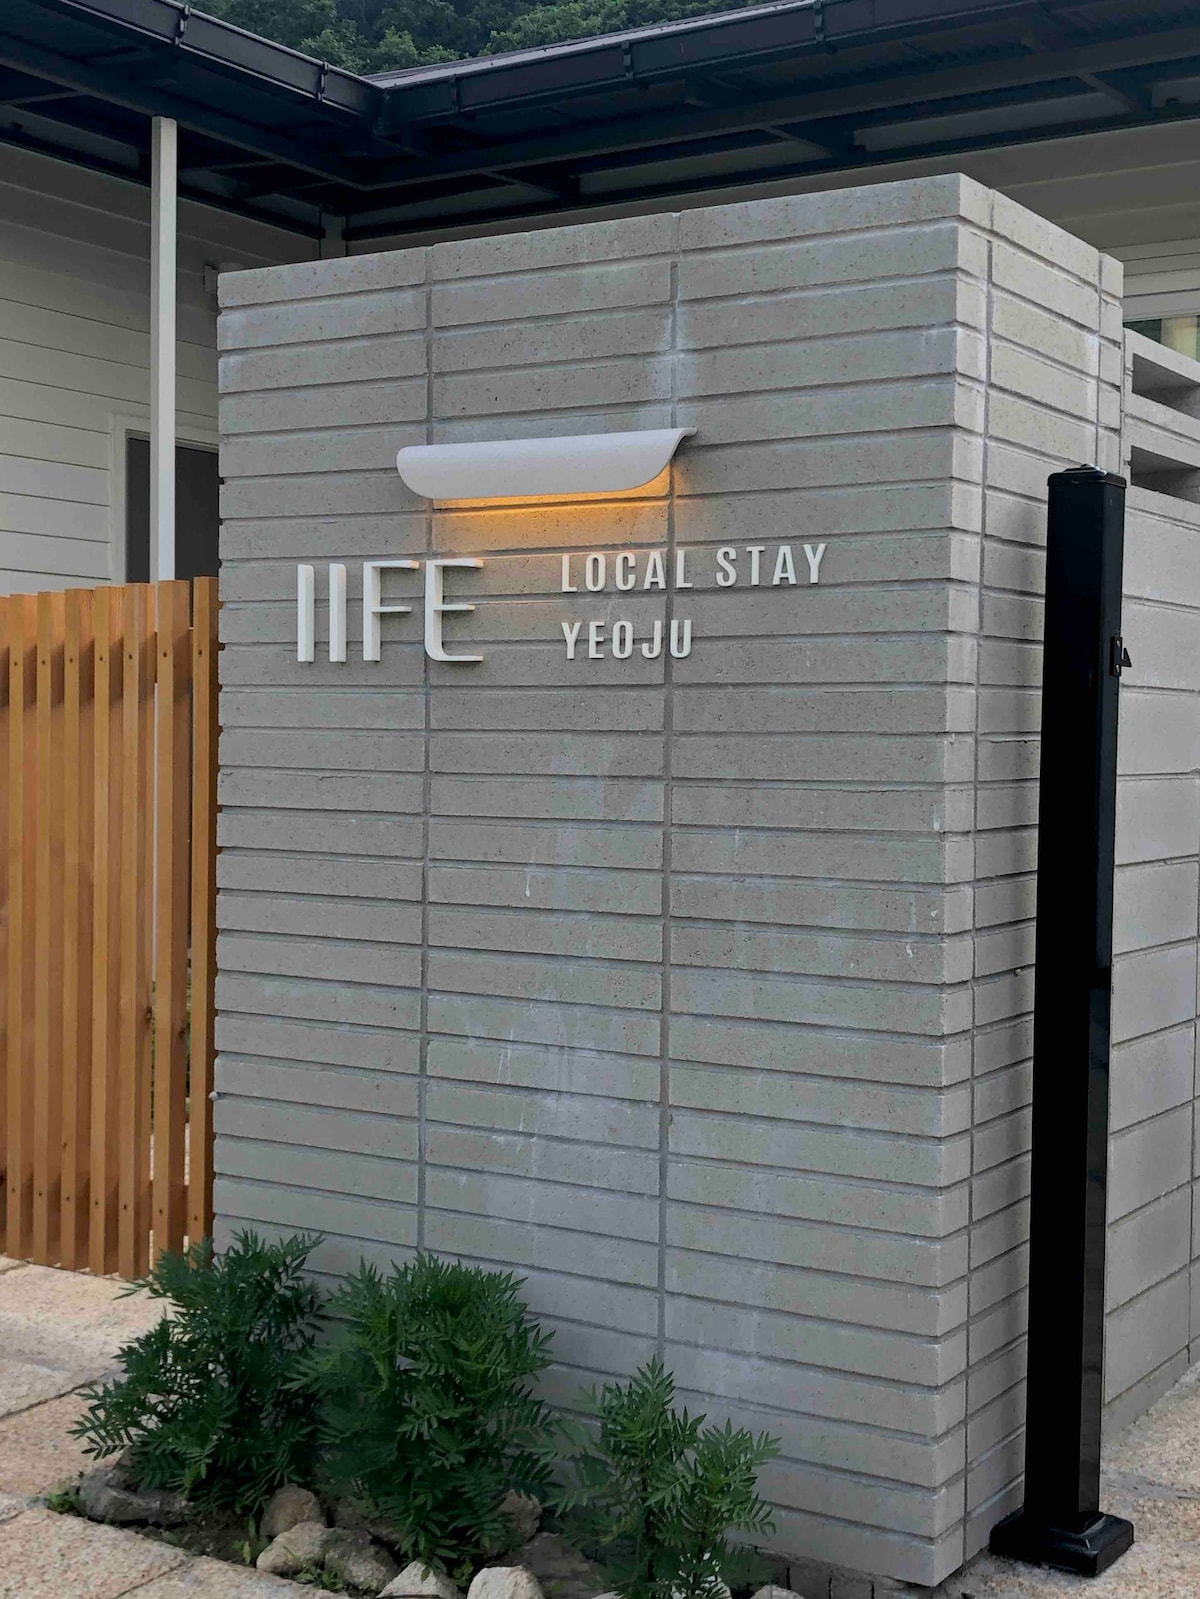 IIFE本地住宿| IP本地住宿
在偏僻的乡村体验当地生活